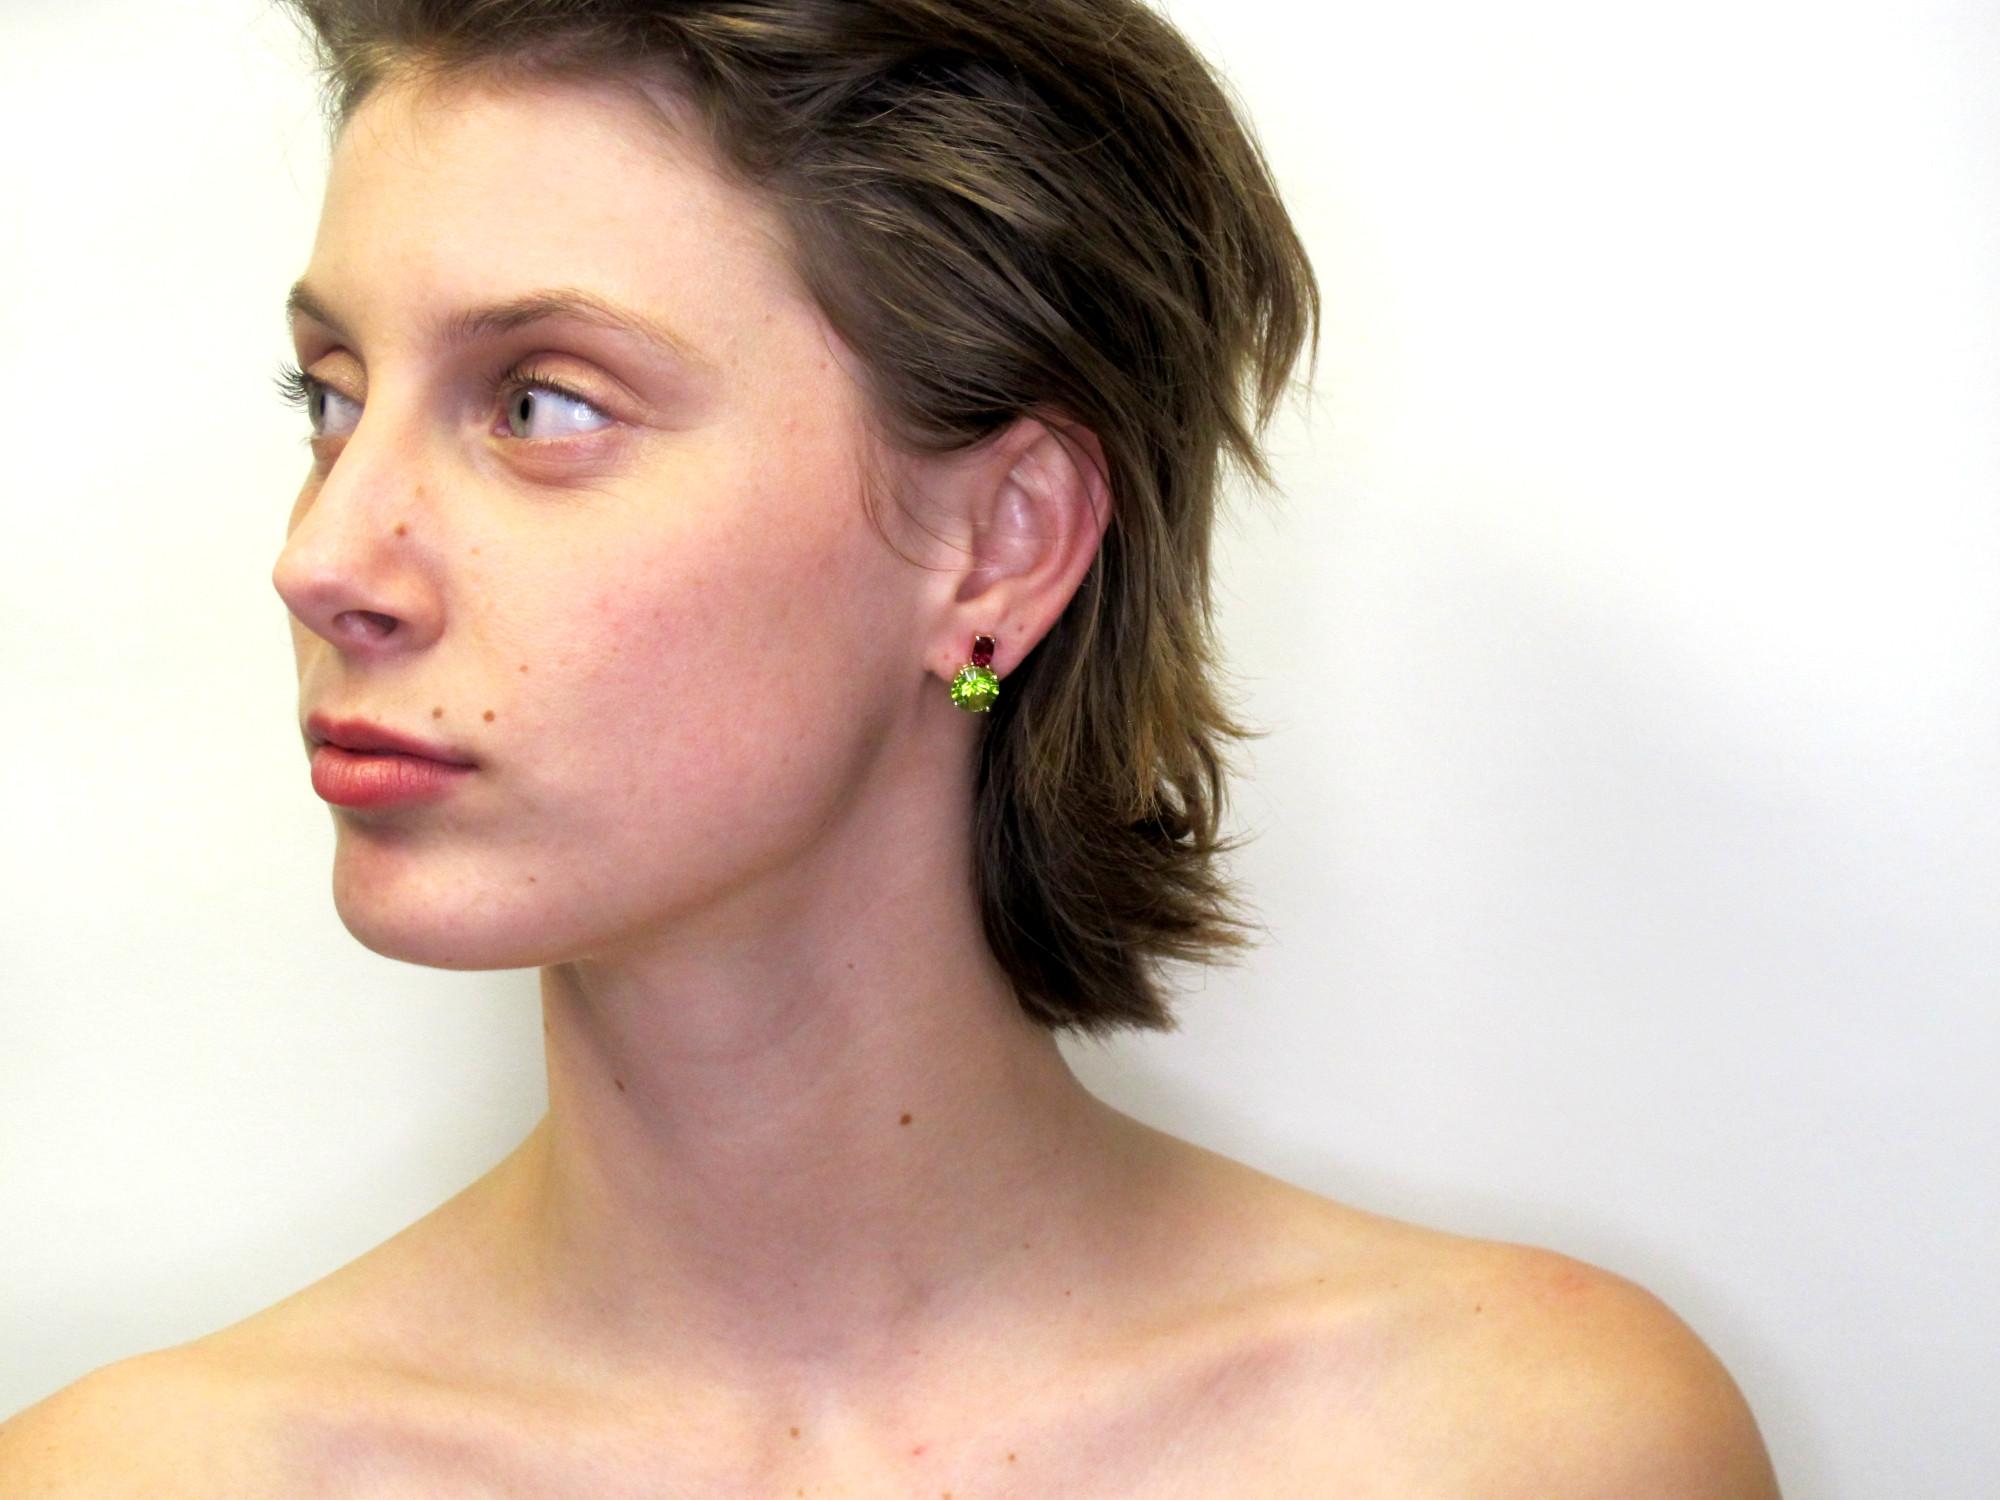 rose gold diamond earrings